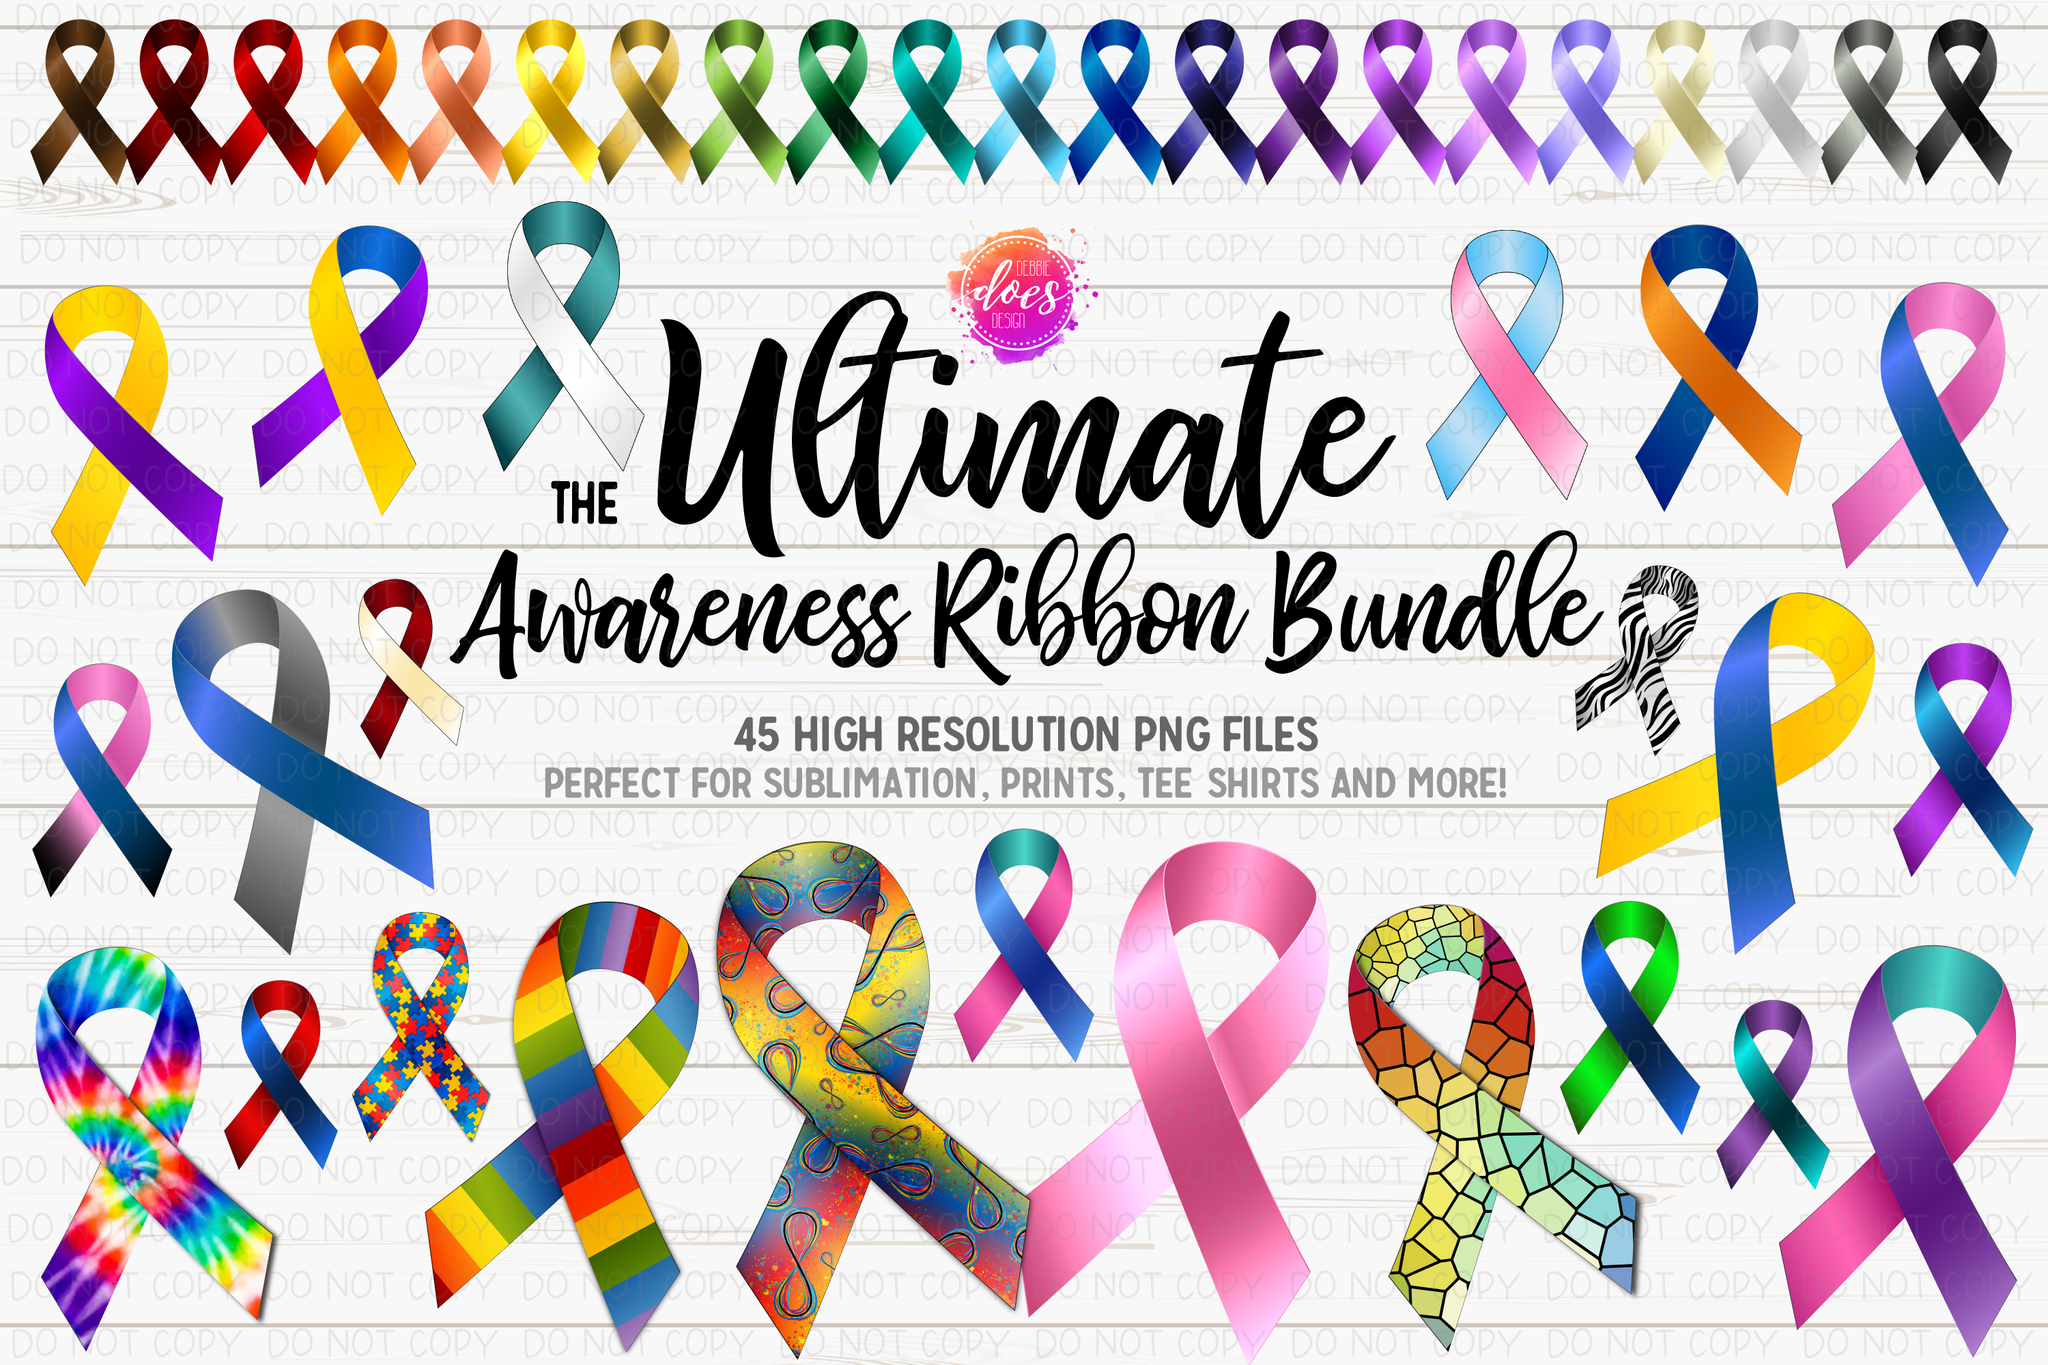 the-ultimate-awareness-ribbon-bundle-44-colors-patterns-design-ele-debbie-does-design